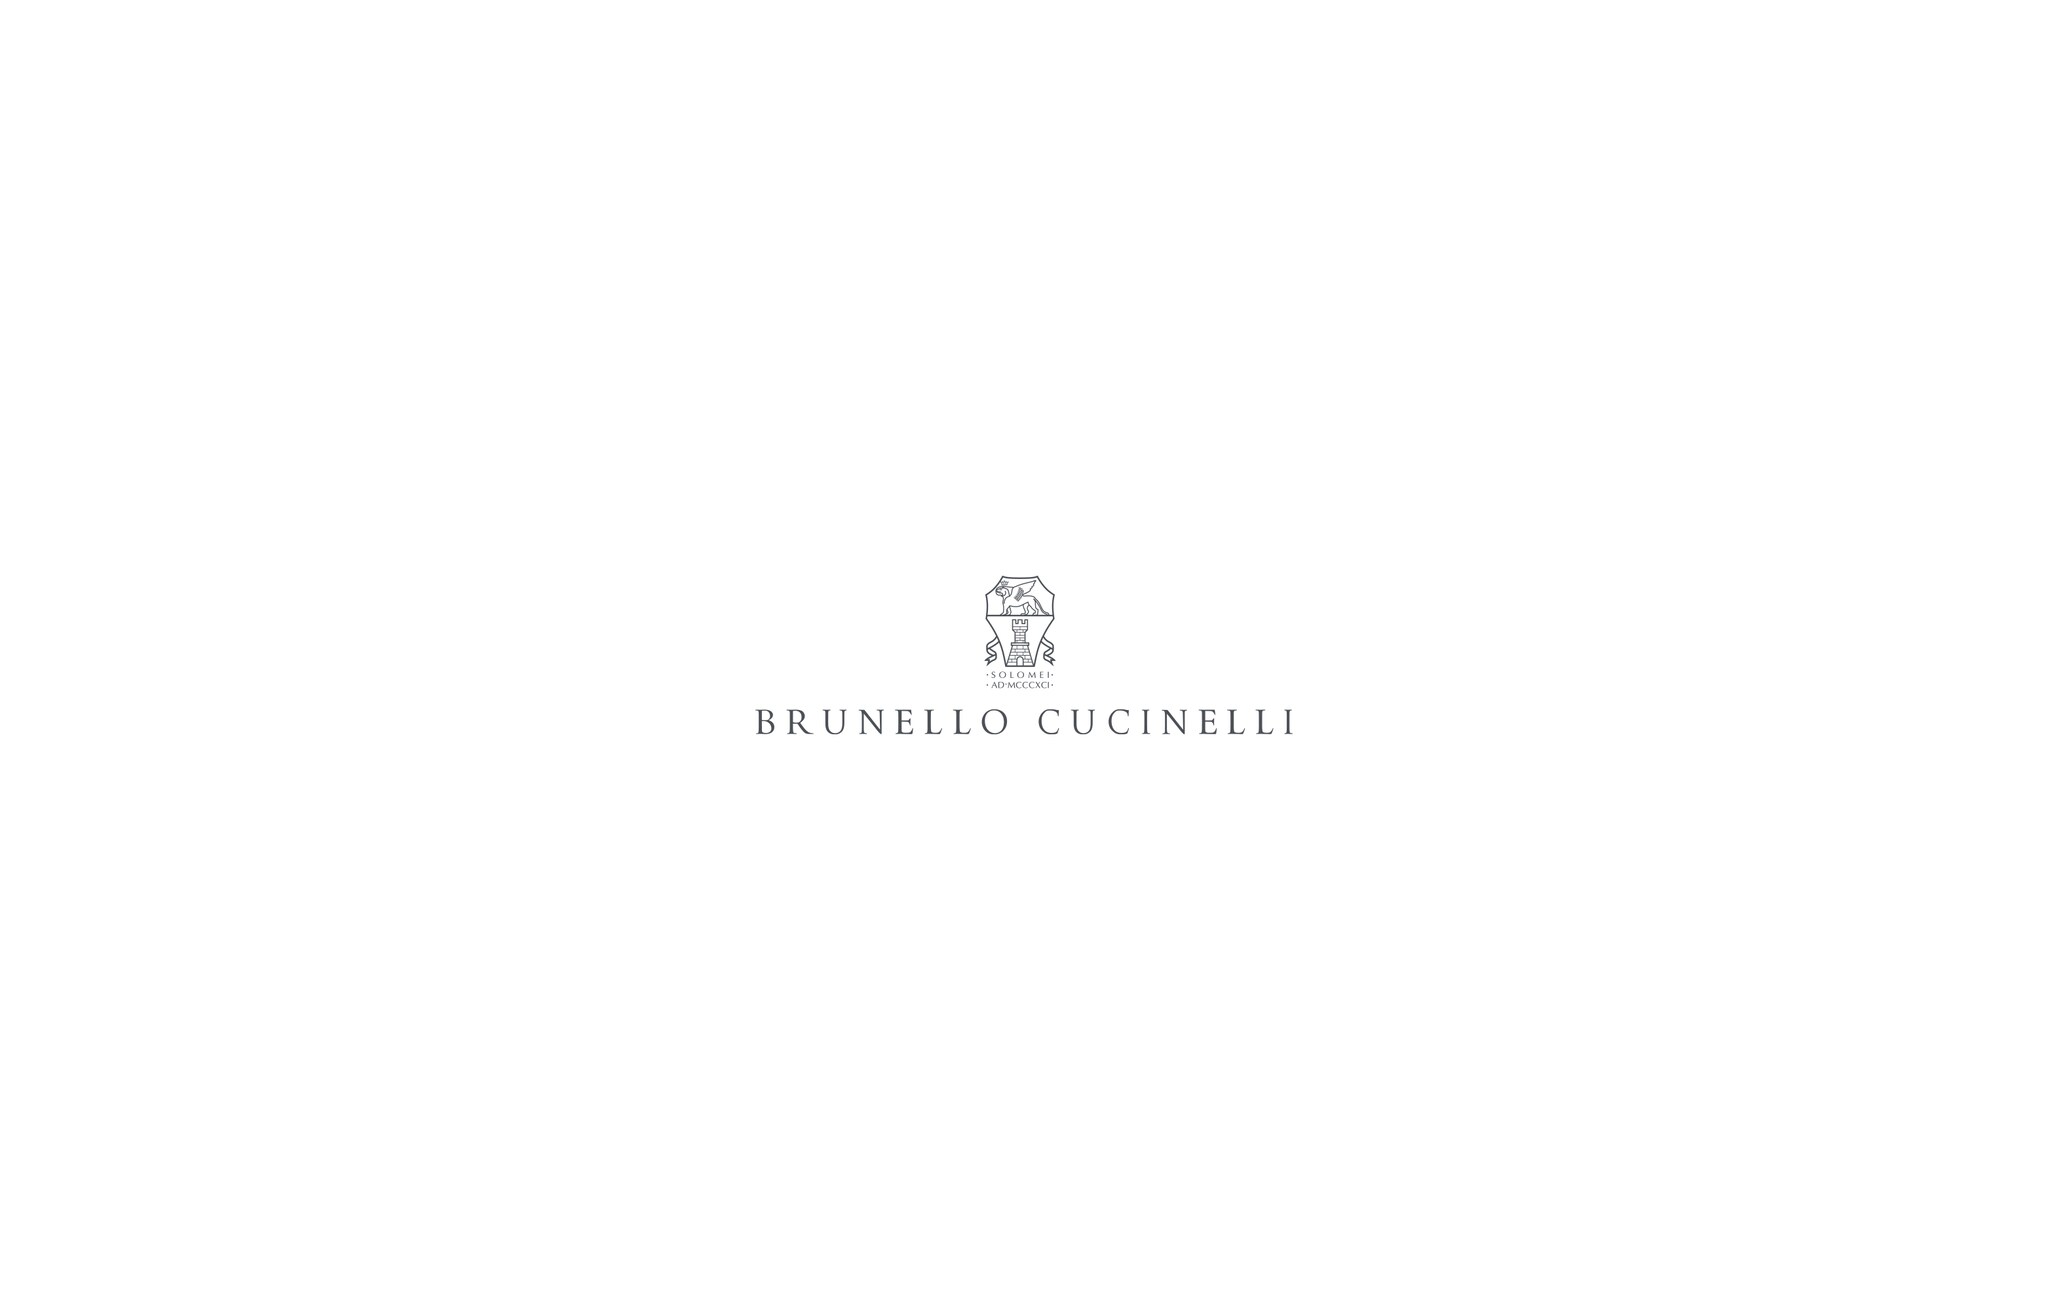  Blazer-style outerwear Brown Man - Brunello Cucinelli 